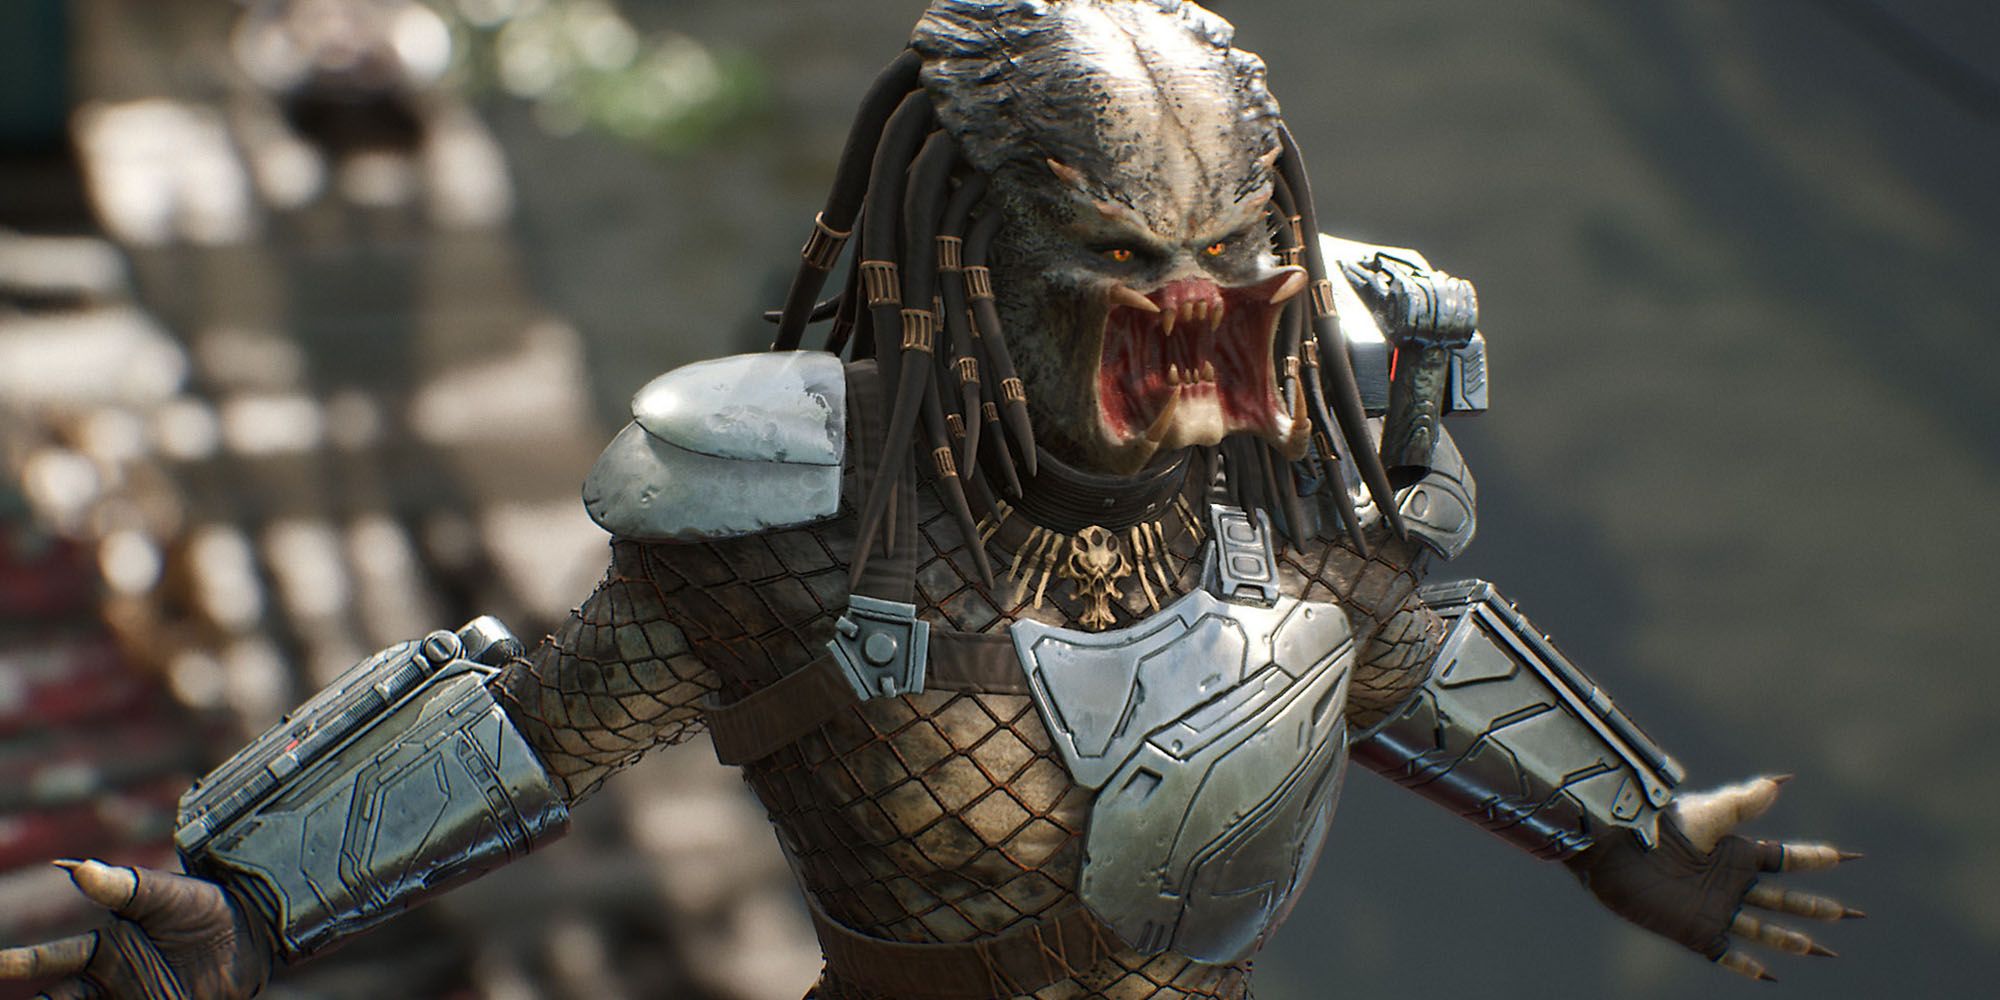 Uma imagem do Predator rugindo no jogo, Predator: Hunting Grounds